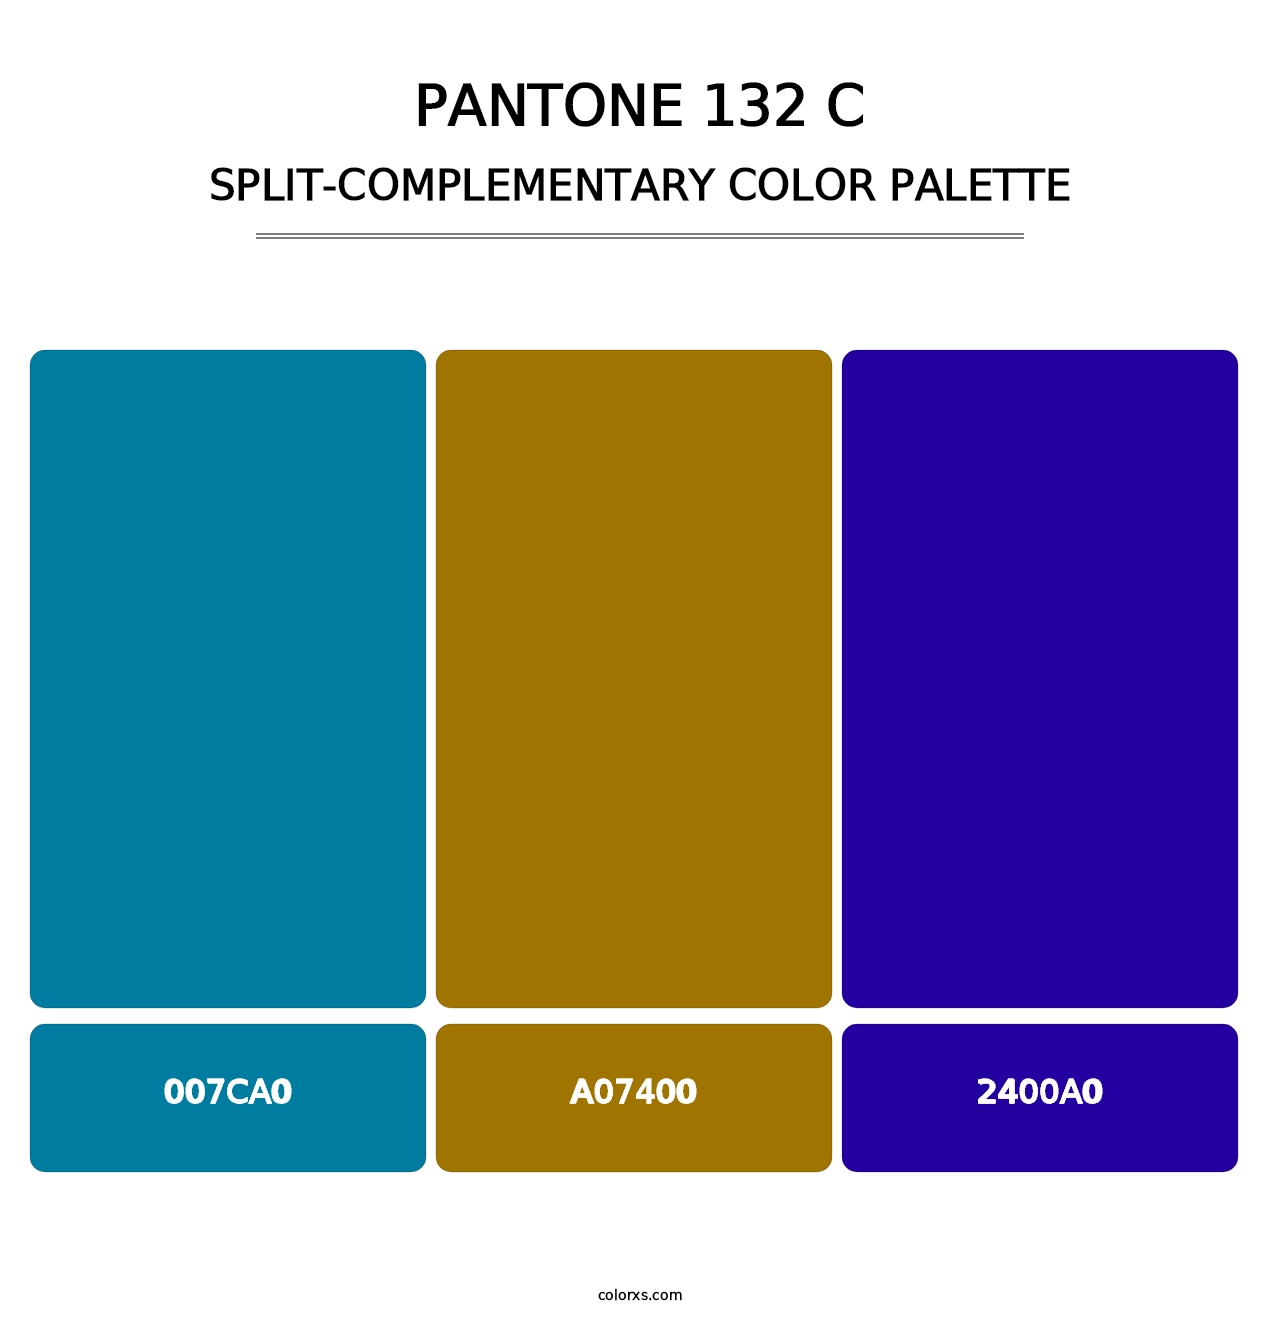 PANTONE 132 C - Split-Complementary Color Palette